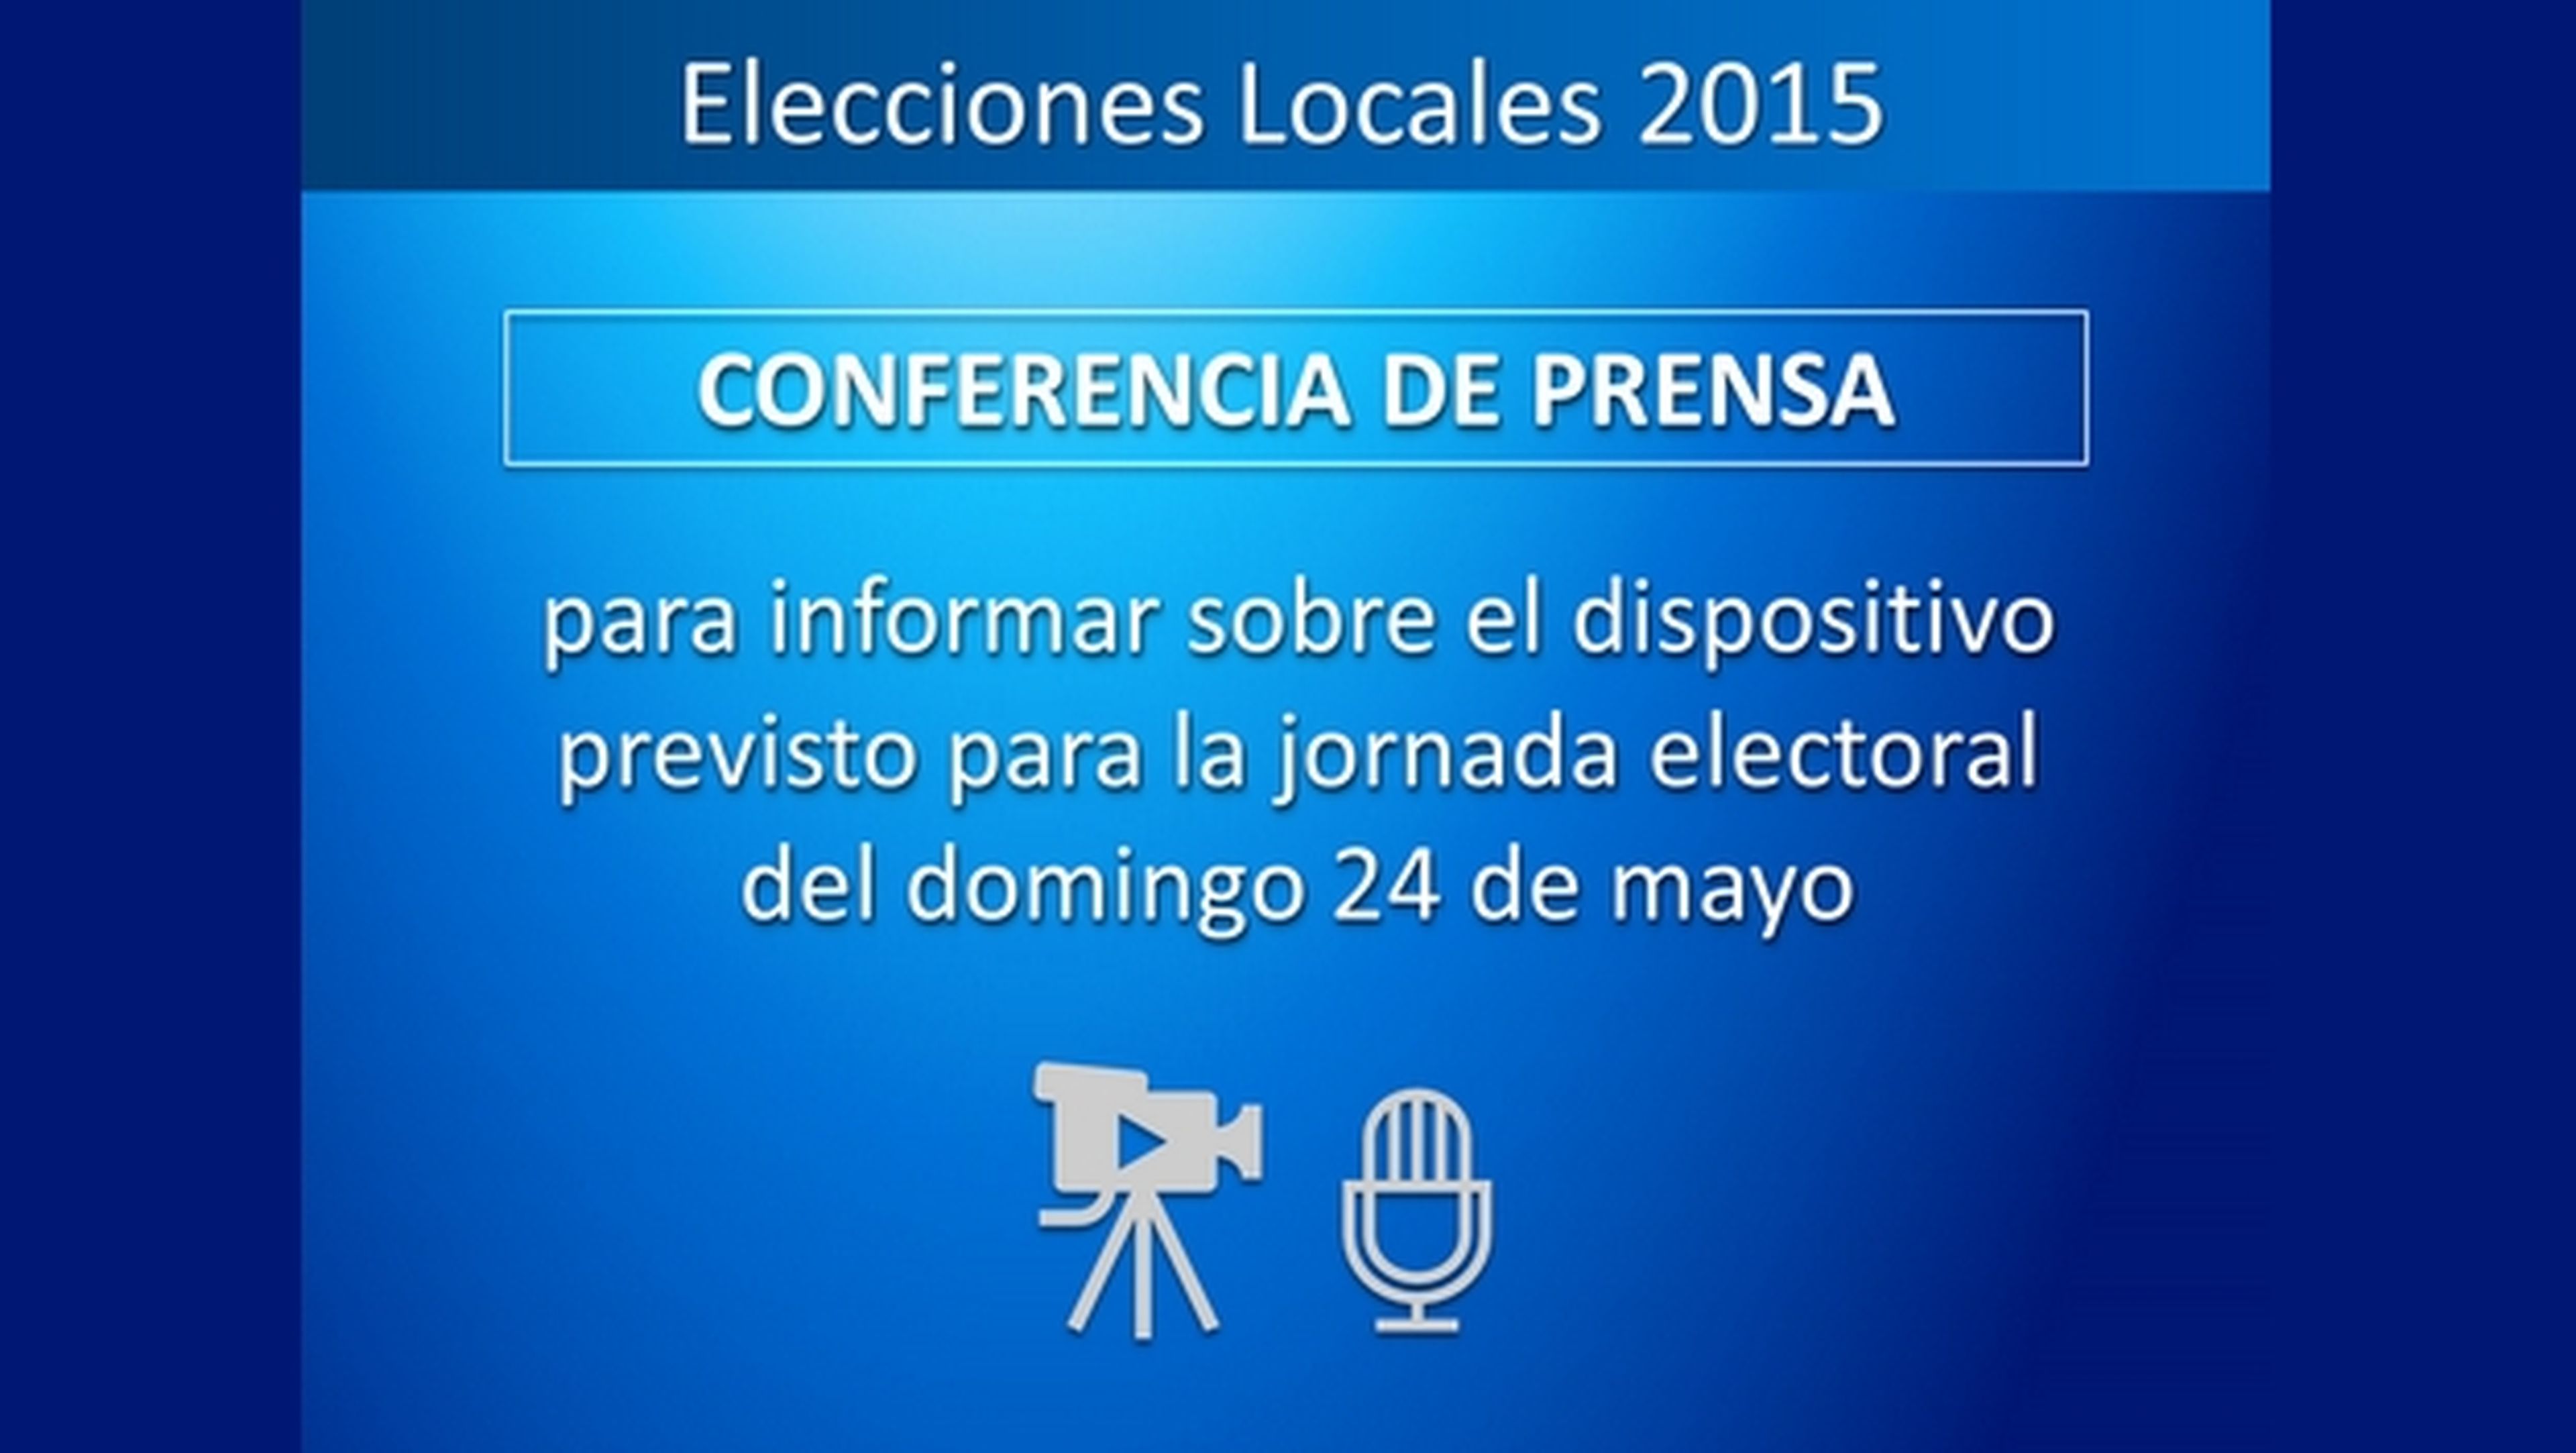 Dónde seguir las Elecciones Locales 2015